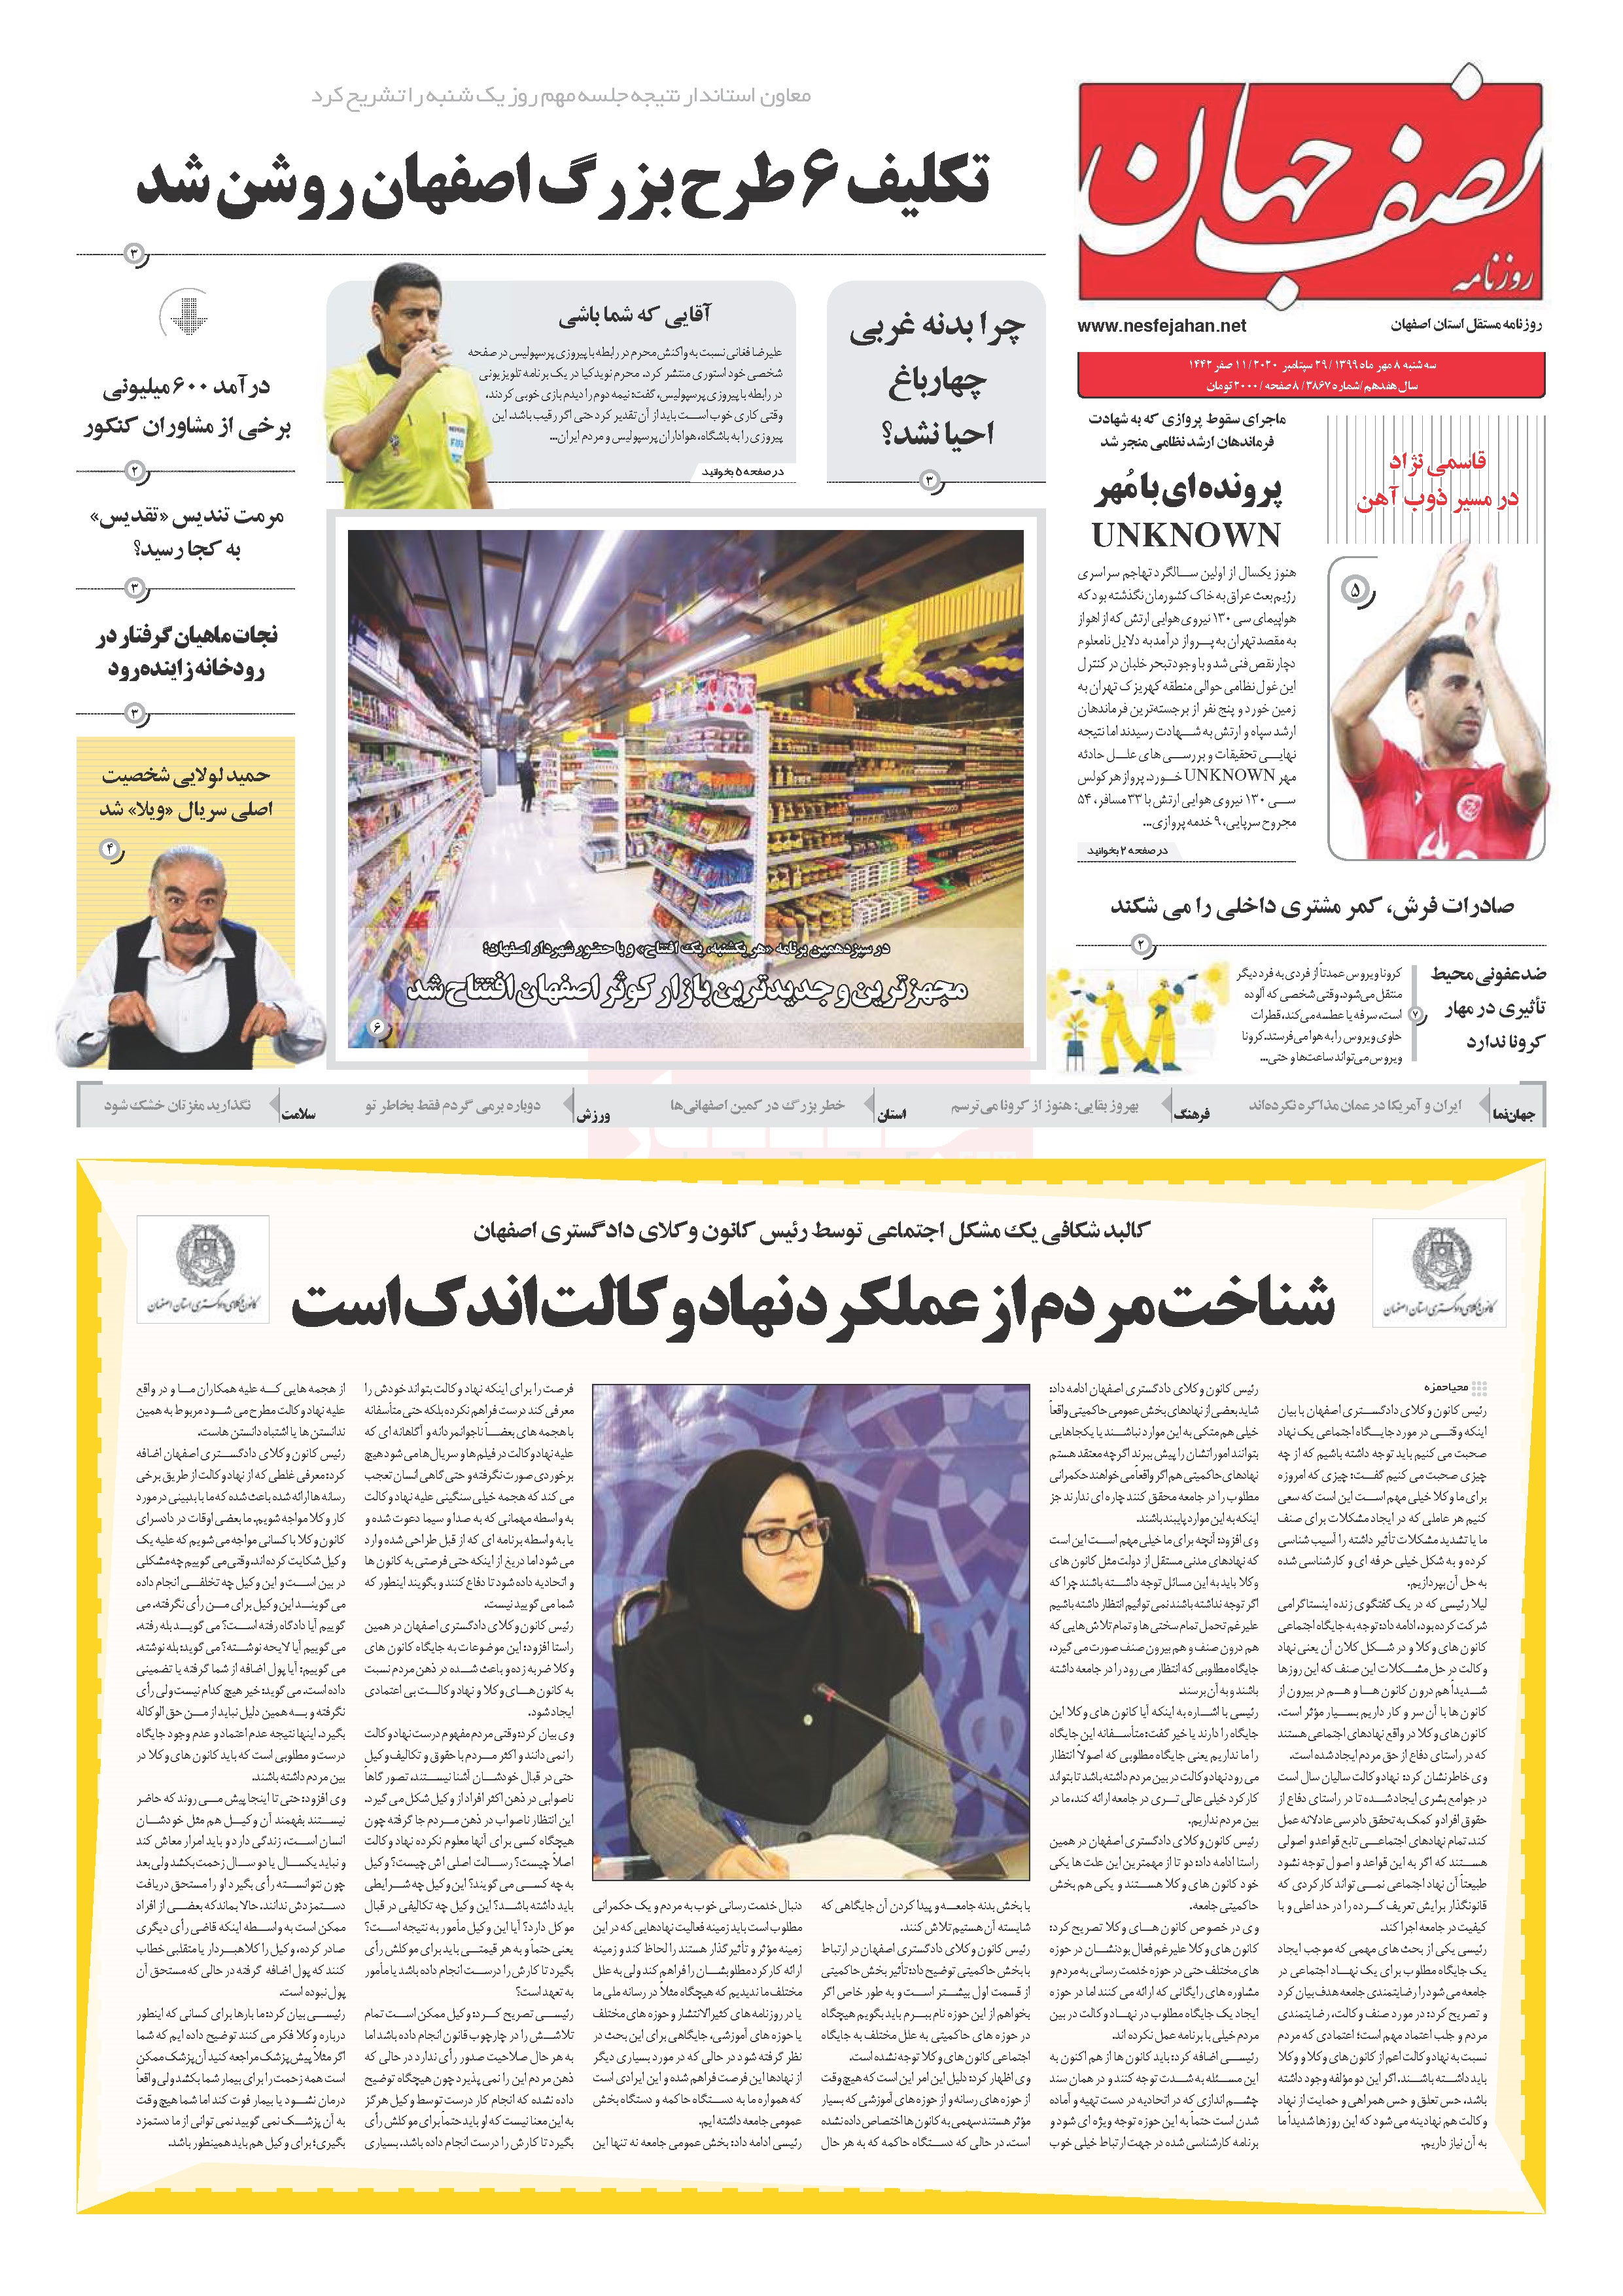 کالبد شکافی یک مشکل اجتماعی توسط رئیس کانون وکلای دادگستری اصفهان شناخت مردم از عملکرد نهاد وکالت اندک است